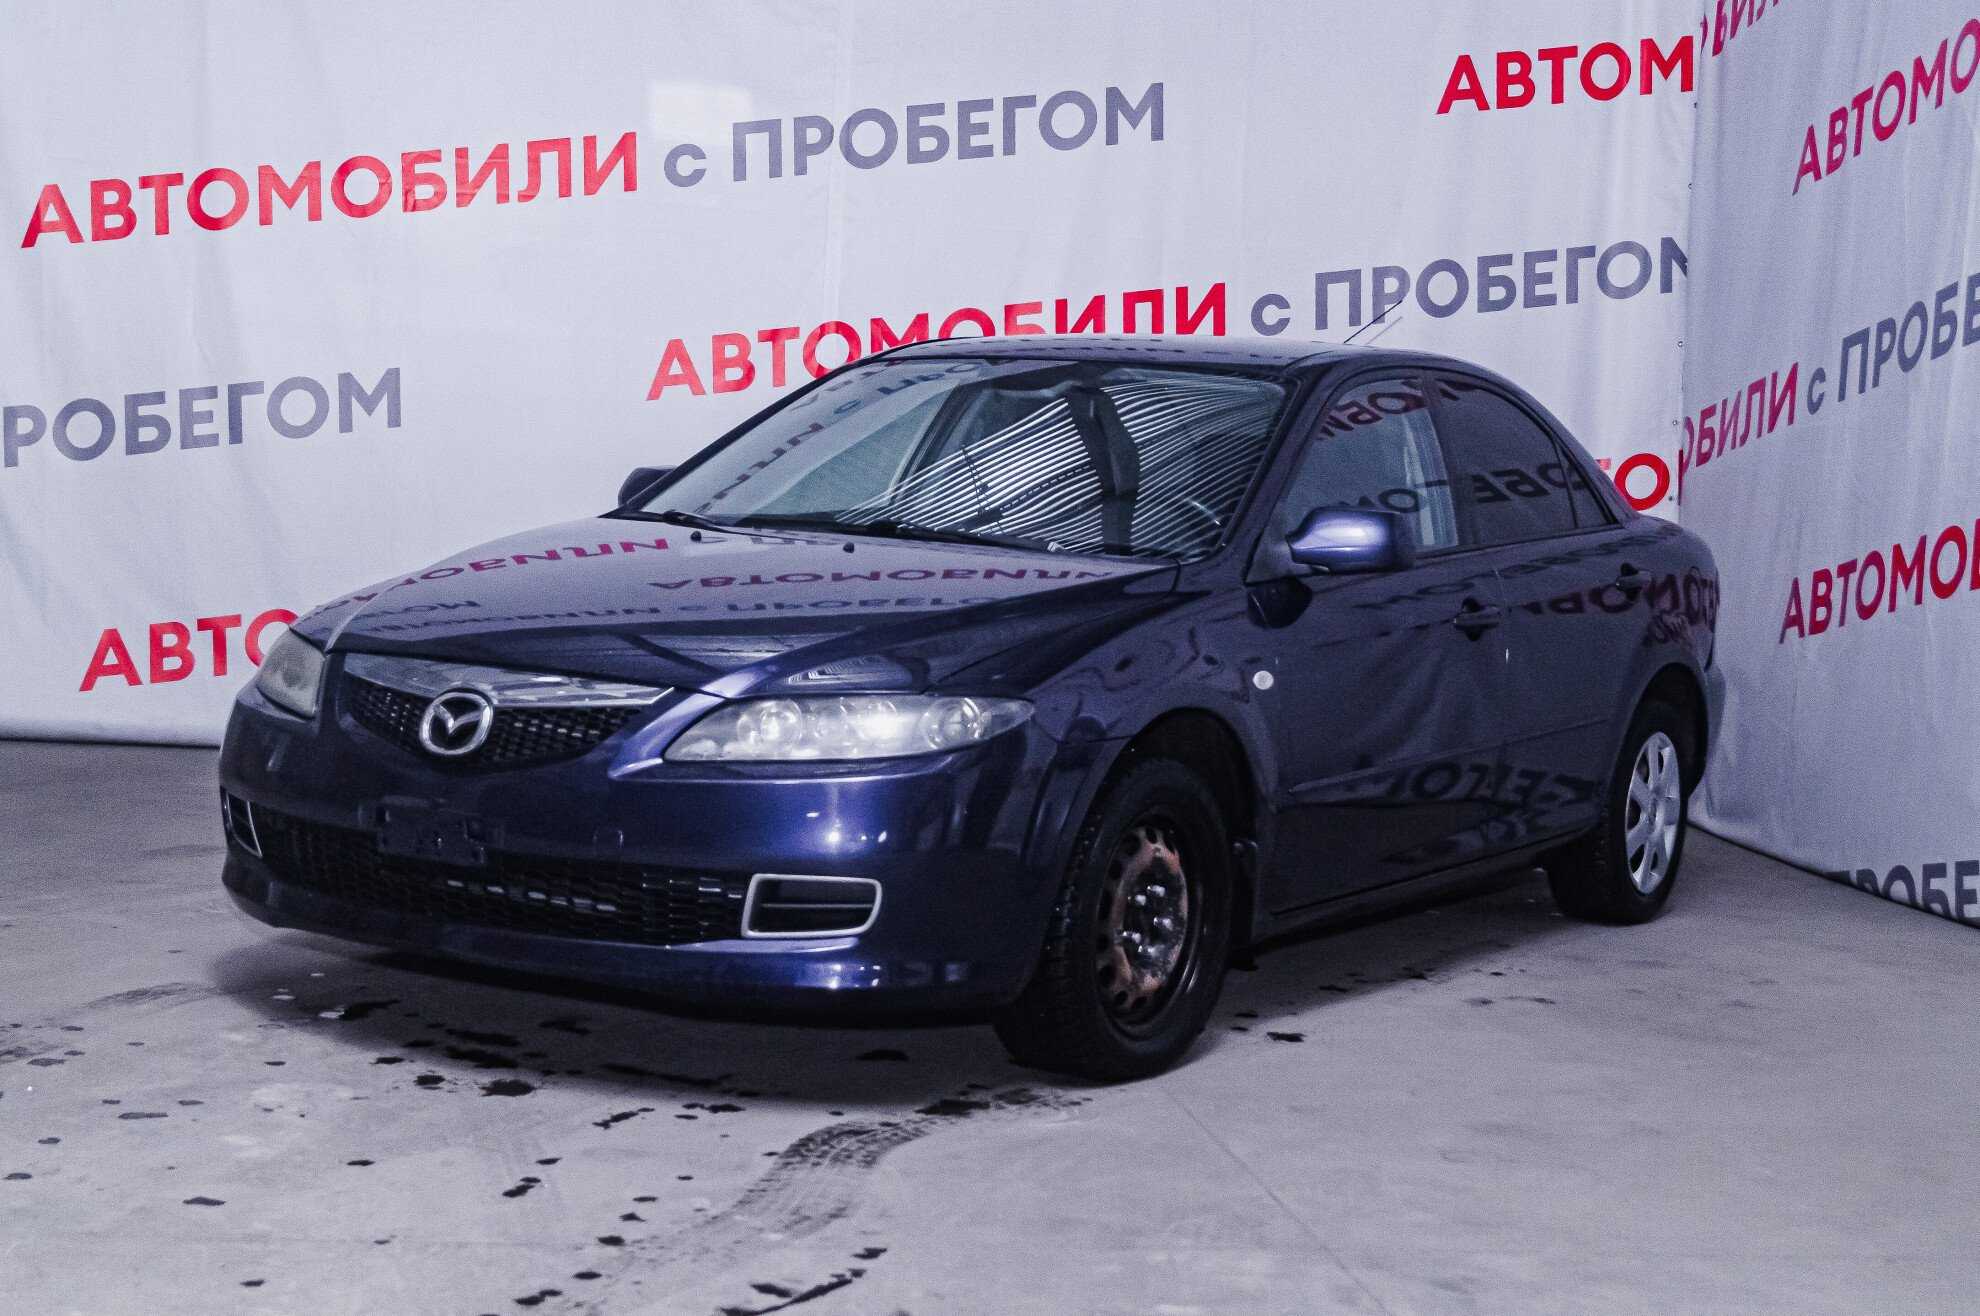 Азимут авто Новосибирск авто с пробегом на Станционной. Купить авто в новосибирске в кредит